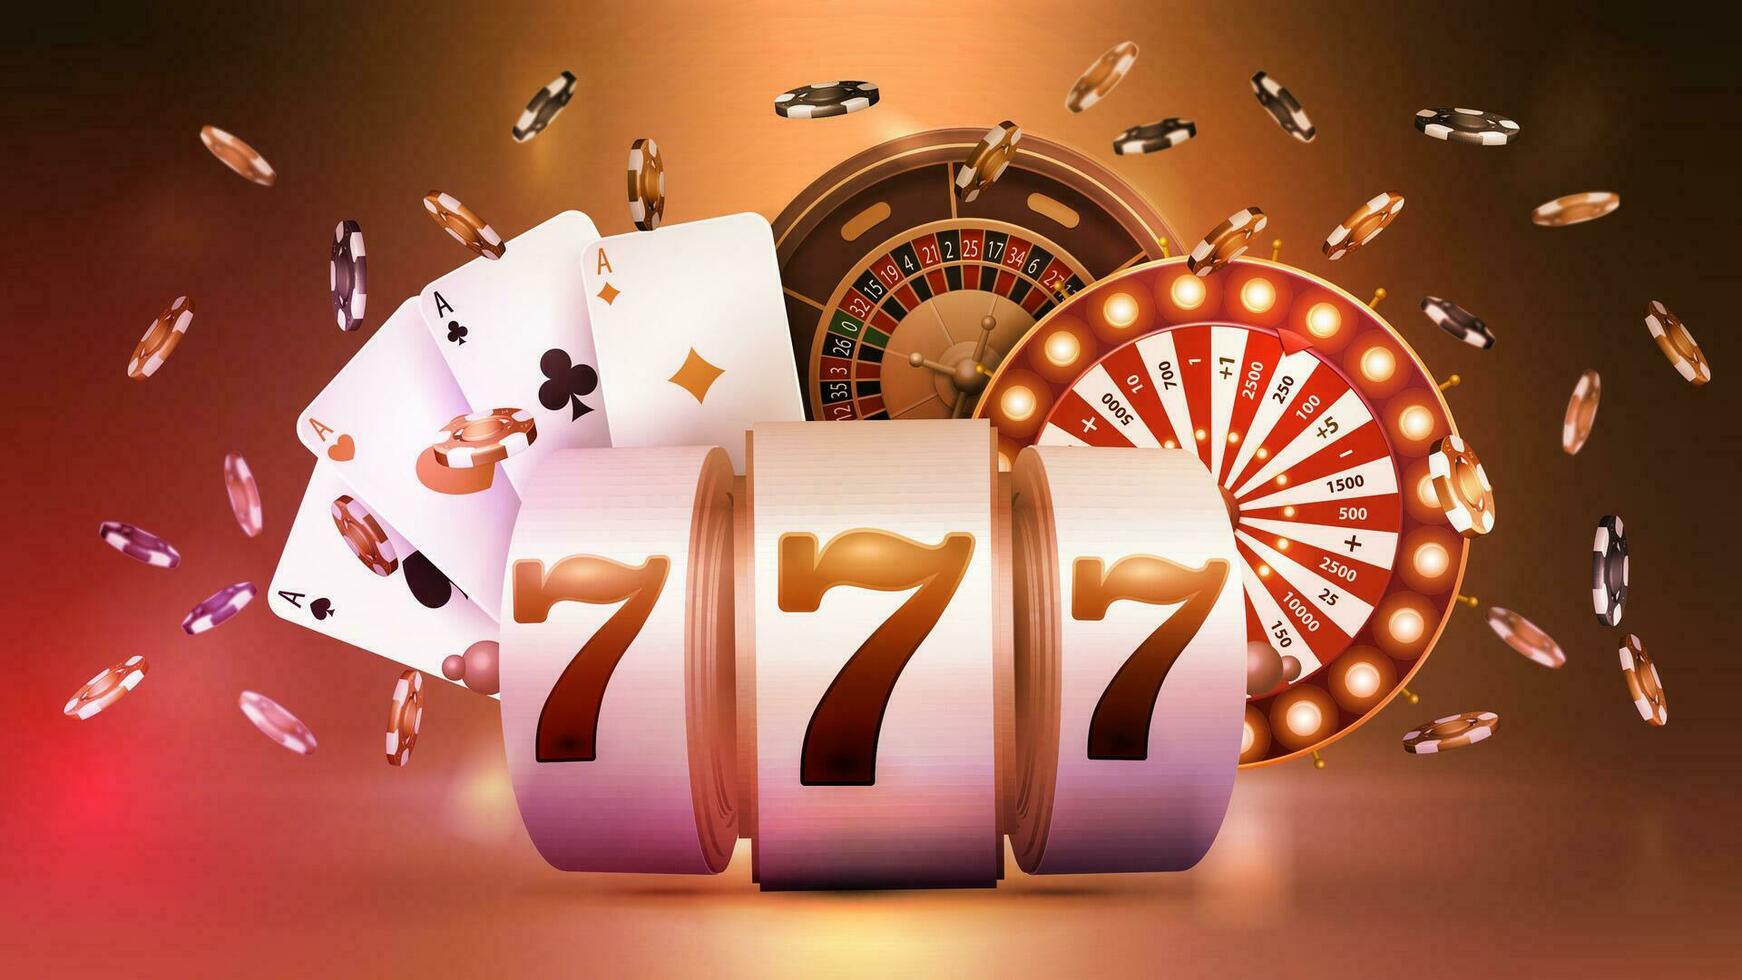 Kasino Slot Maschine, Rad Reichtum, Roulette Rad, Poker Chips und spielen Karten im Orange Szene. Kasino Poster zum Ihre Kunst vektor